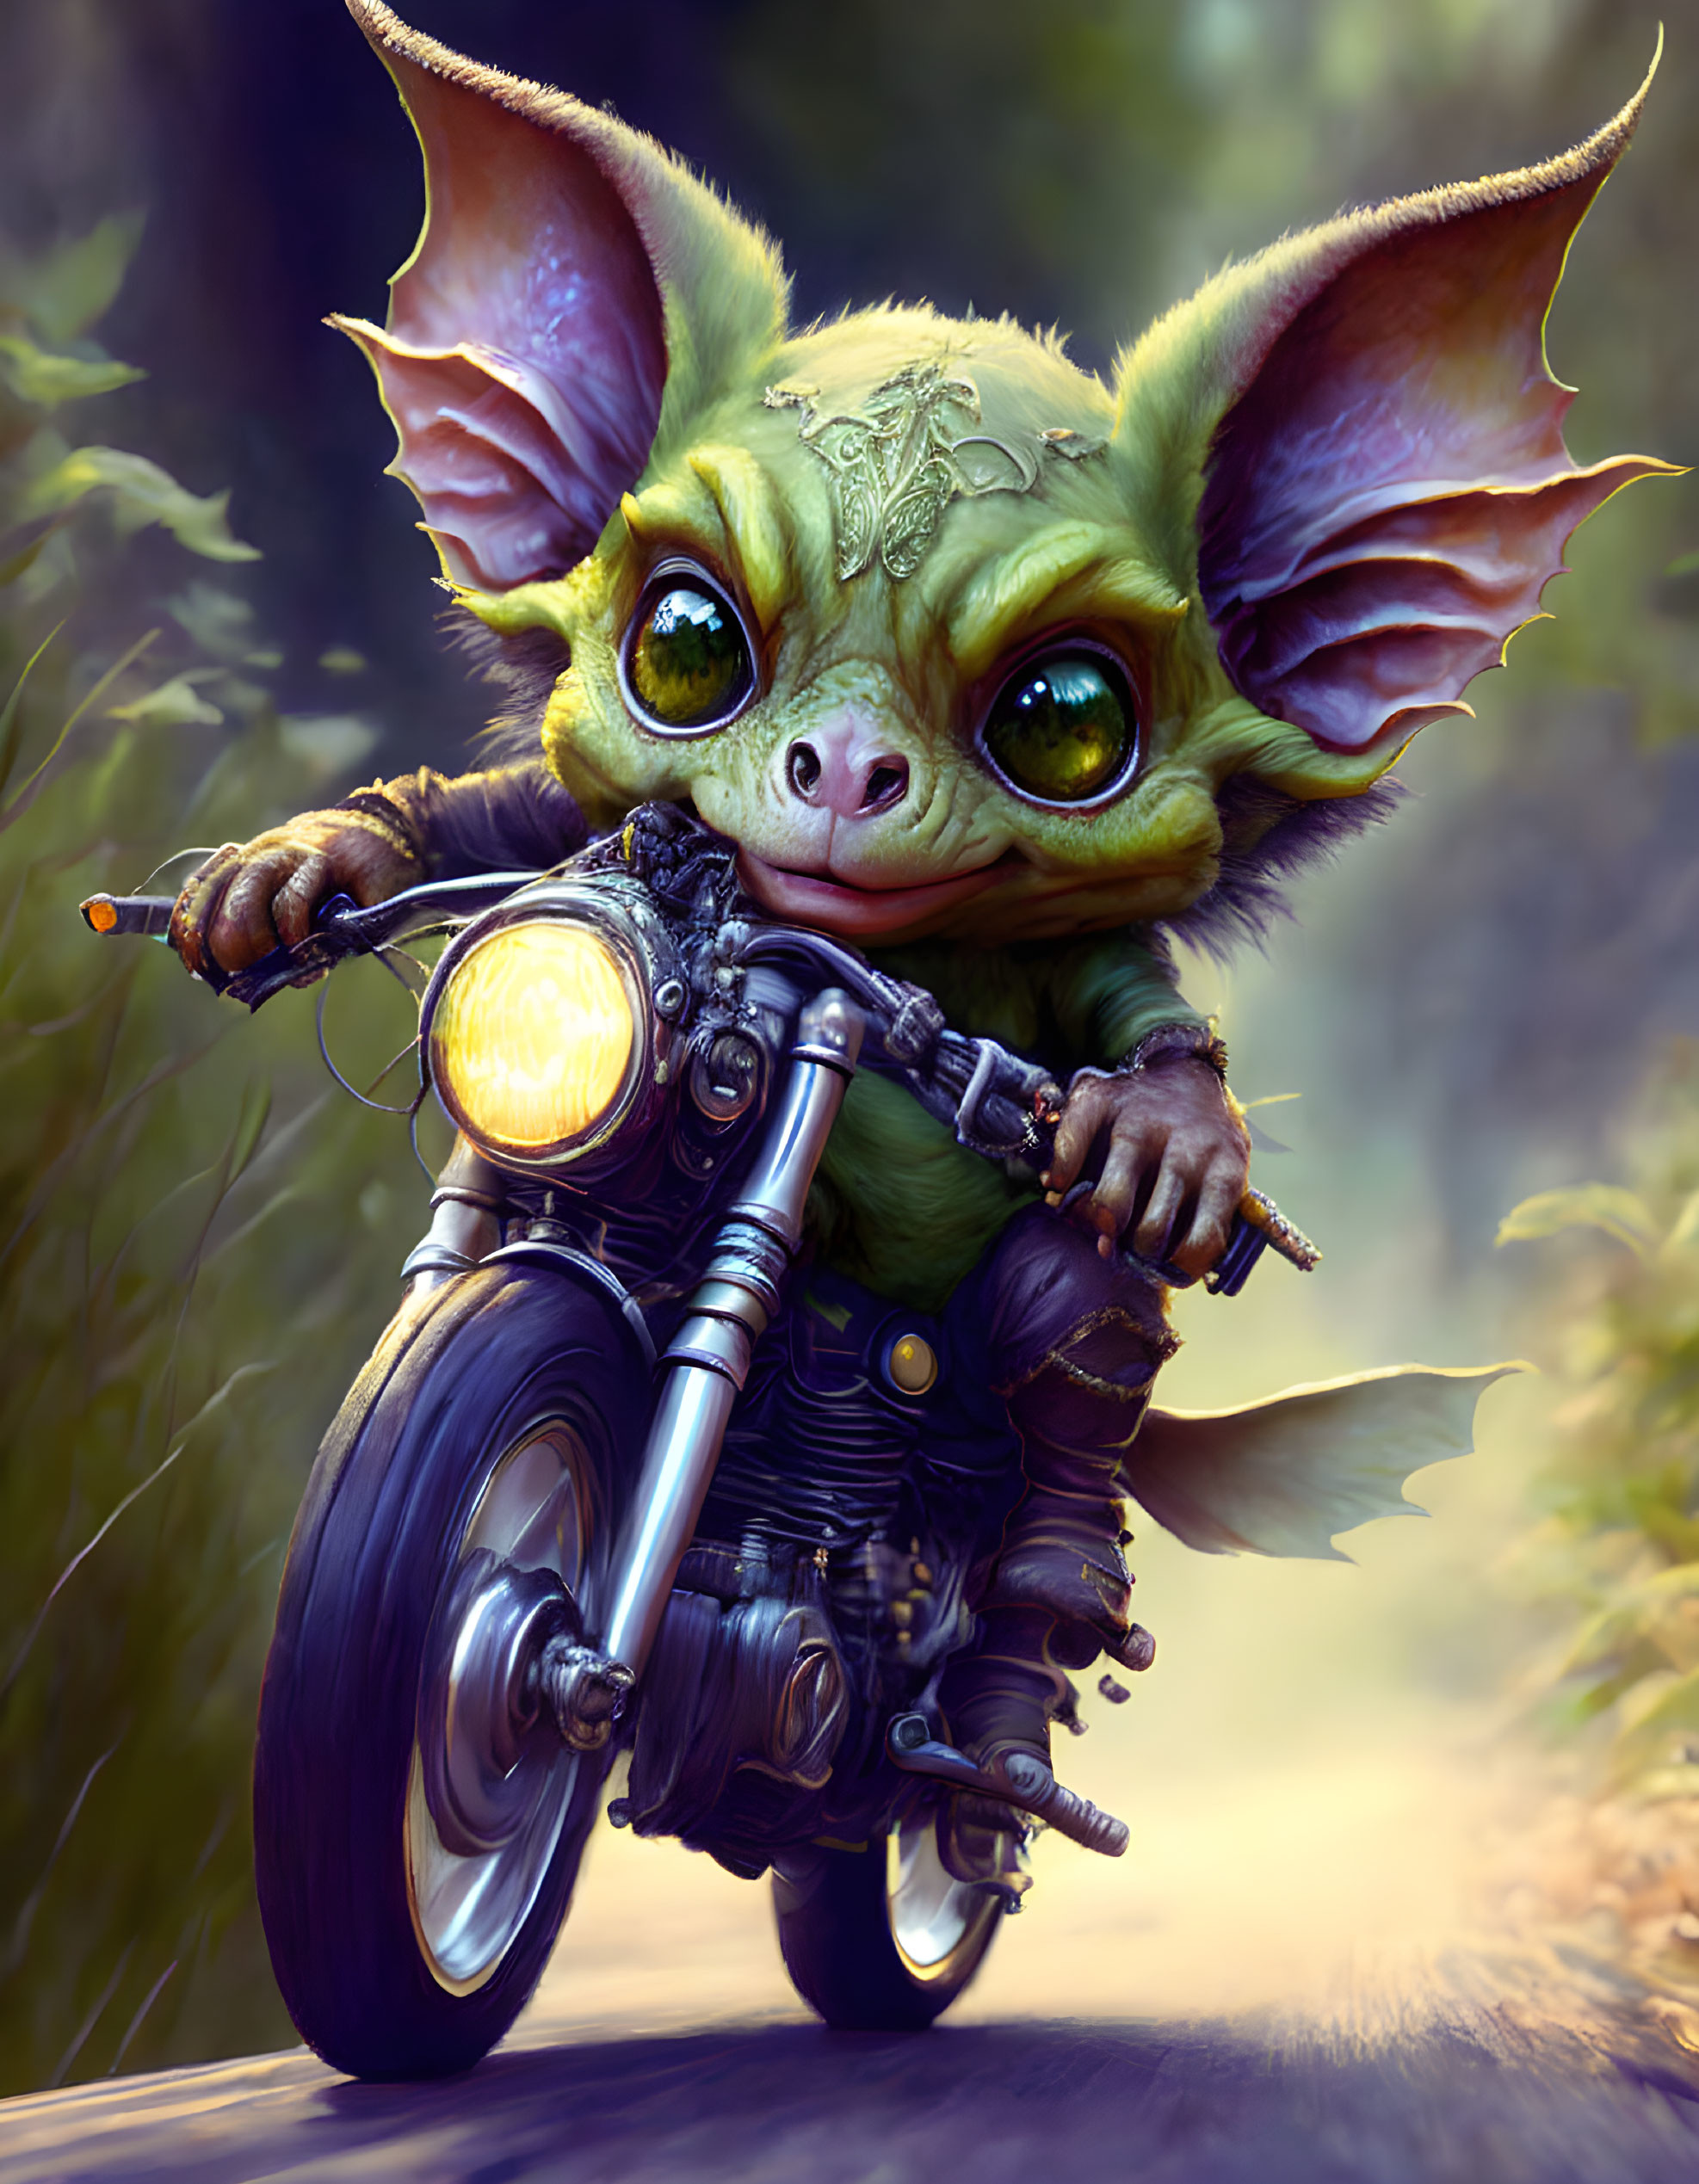 Goblin gremlin rides a motorcycle